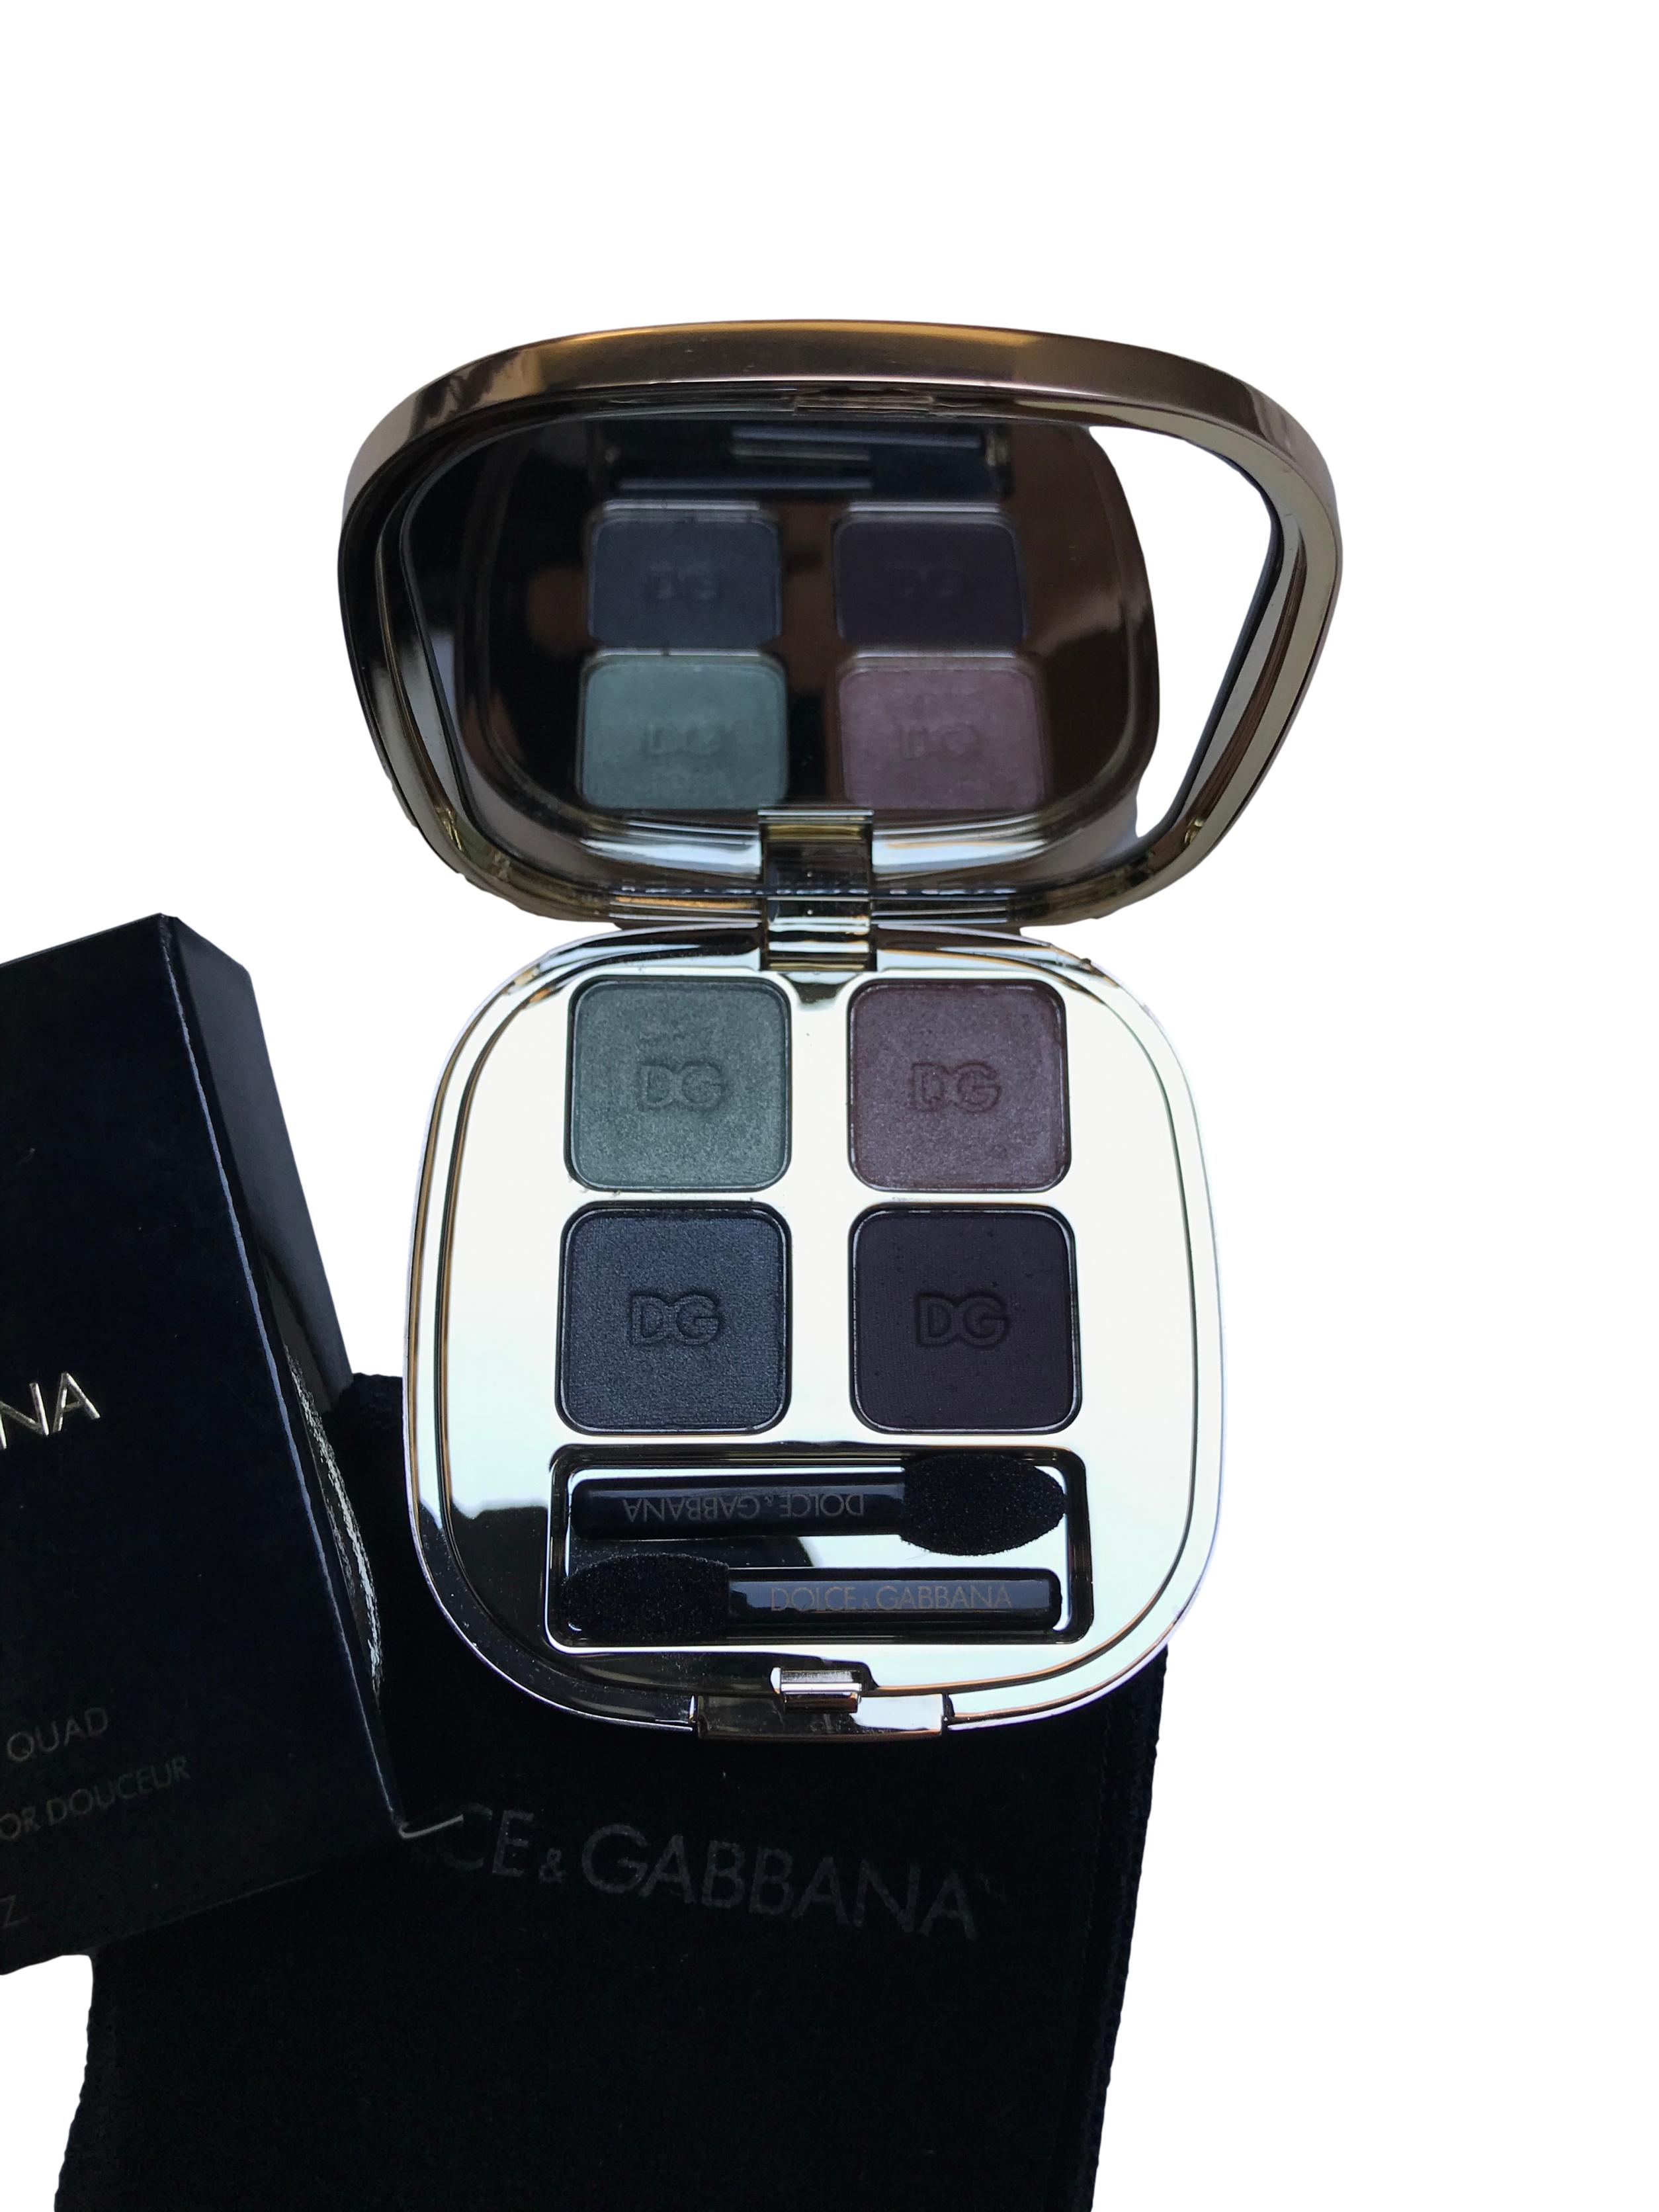 Paleta de sombras Dolce&Gabanna. Smooth eye colour quad 155 - 4202. Nuevo, viene con funda y caja. Precio original S/ 199